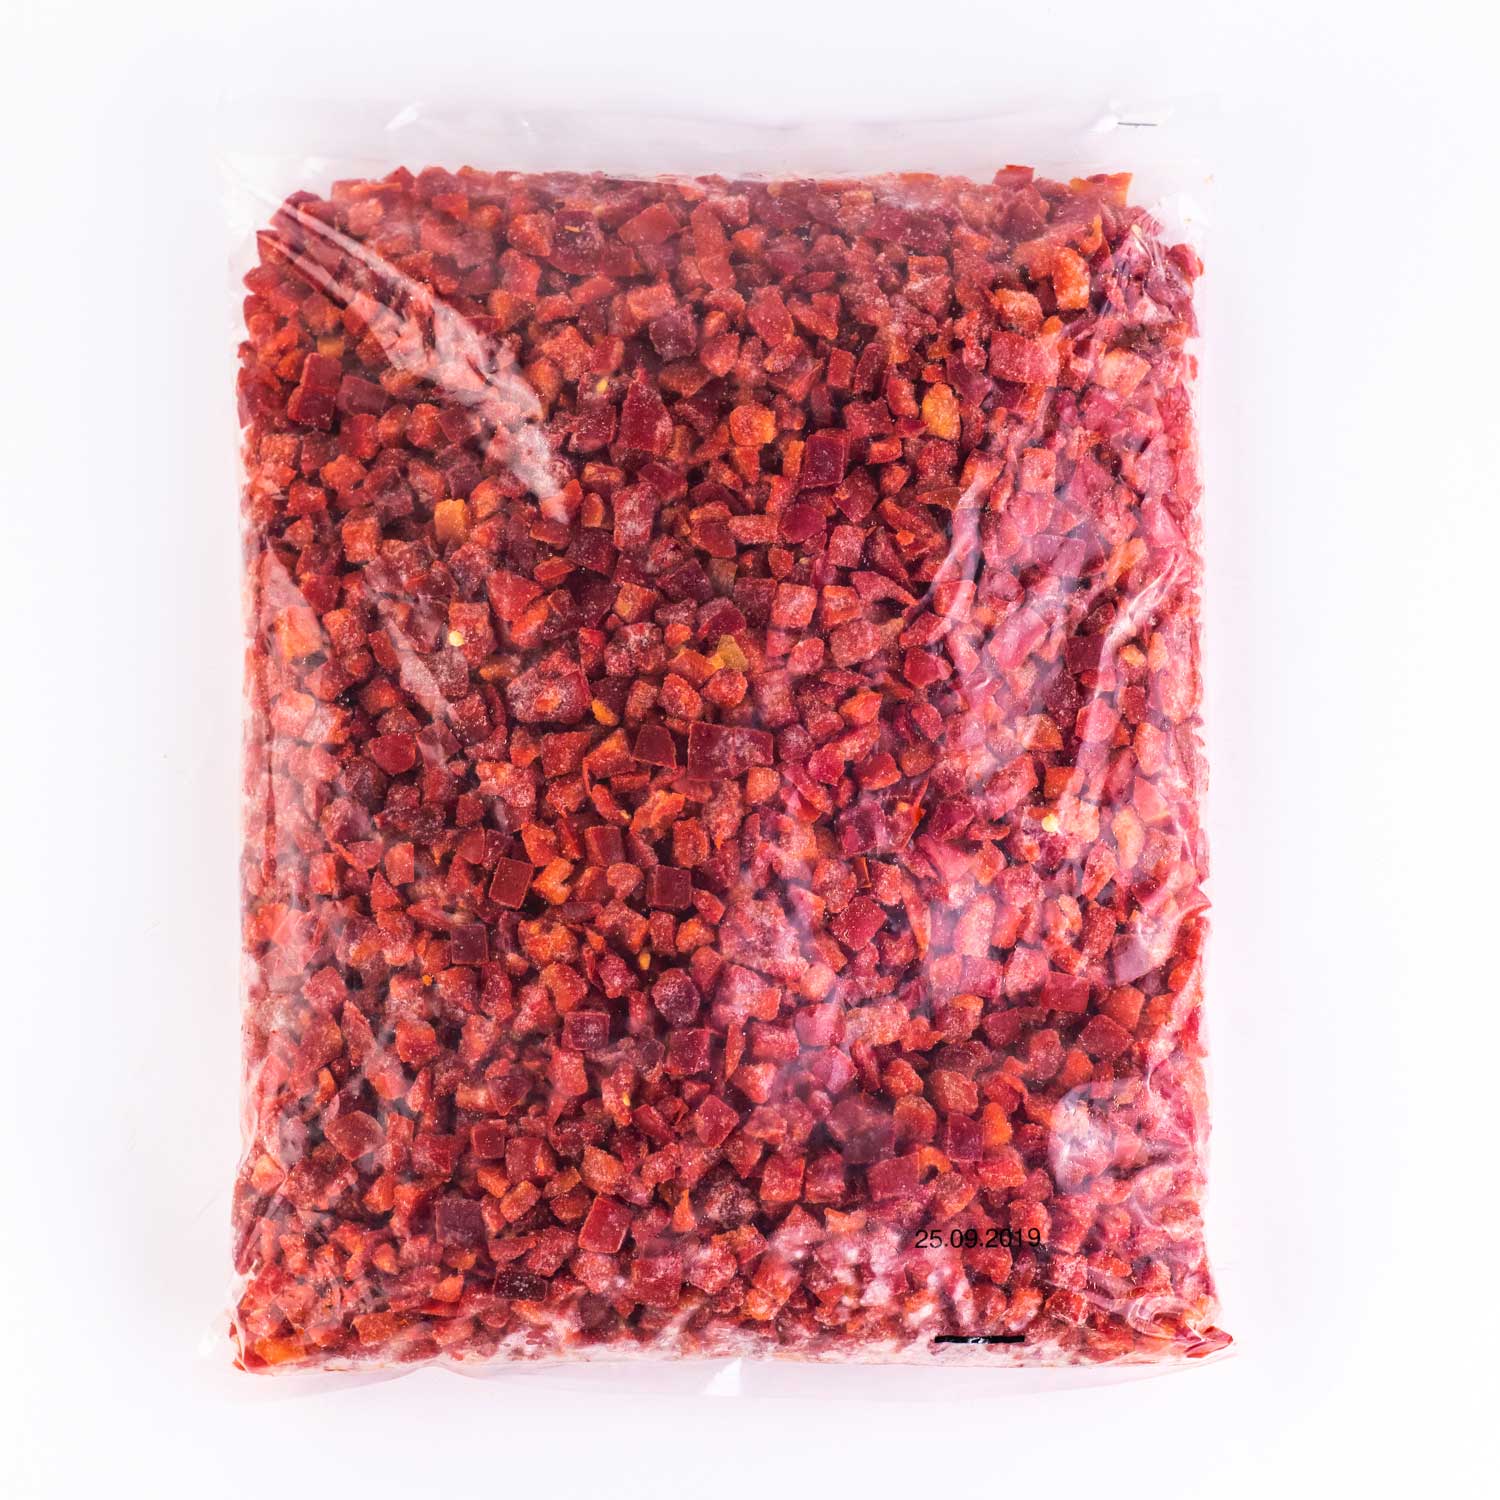 Poivron rouge - Sun Fruit - Produit frais et locaux